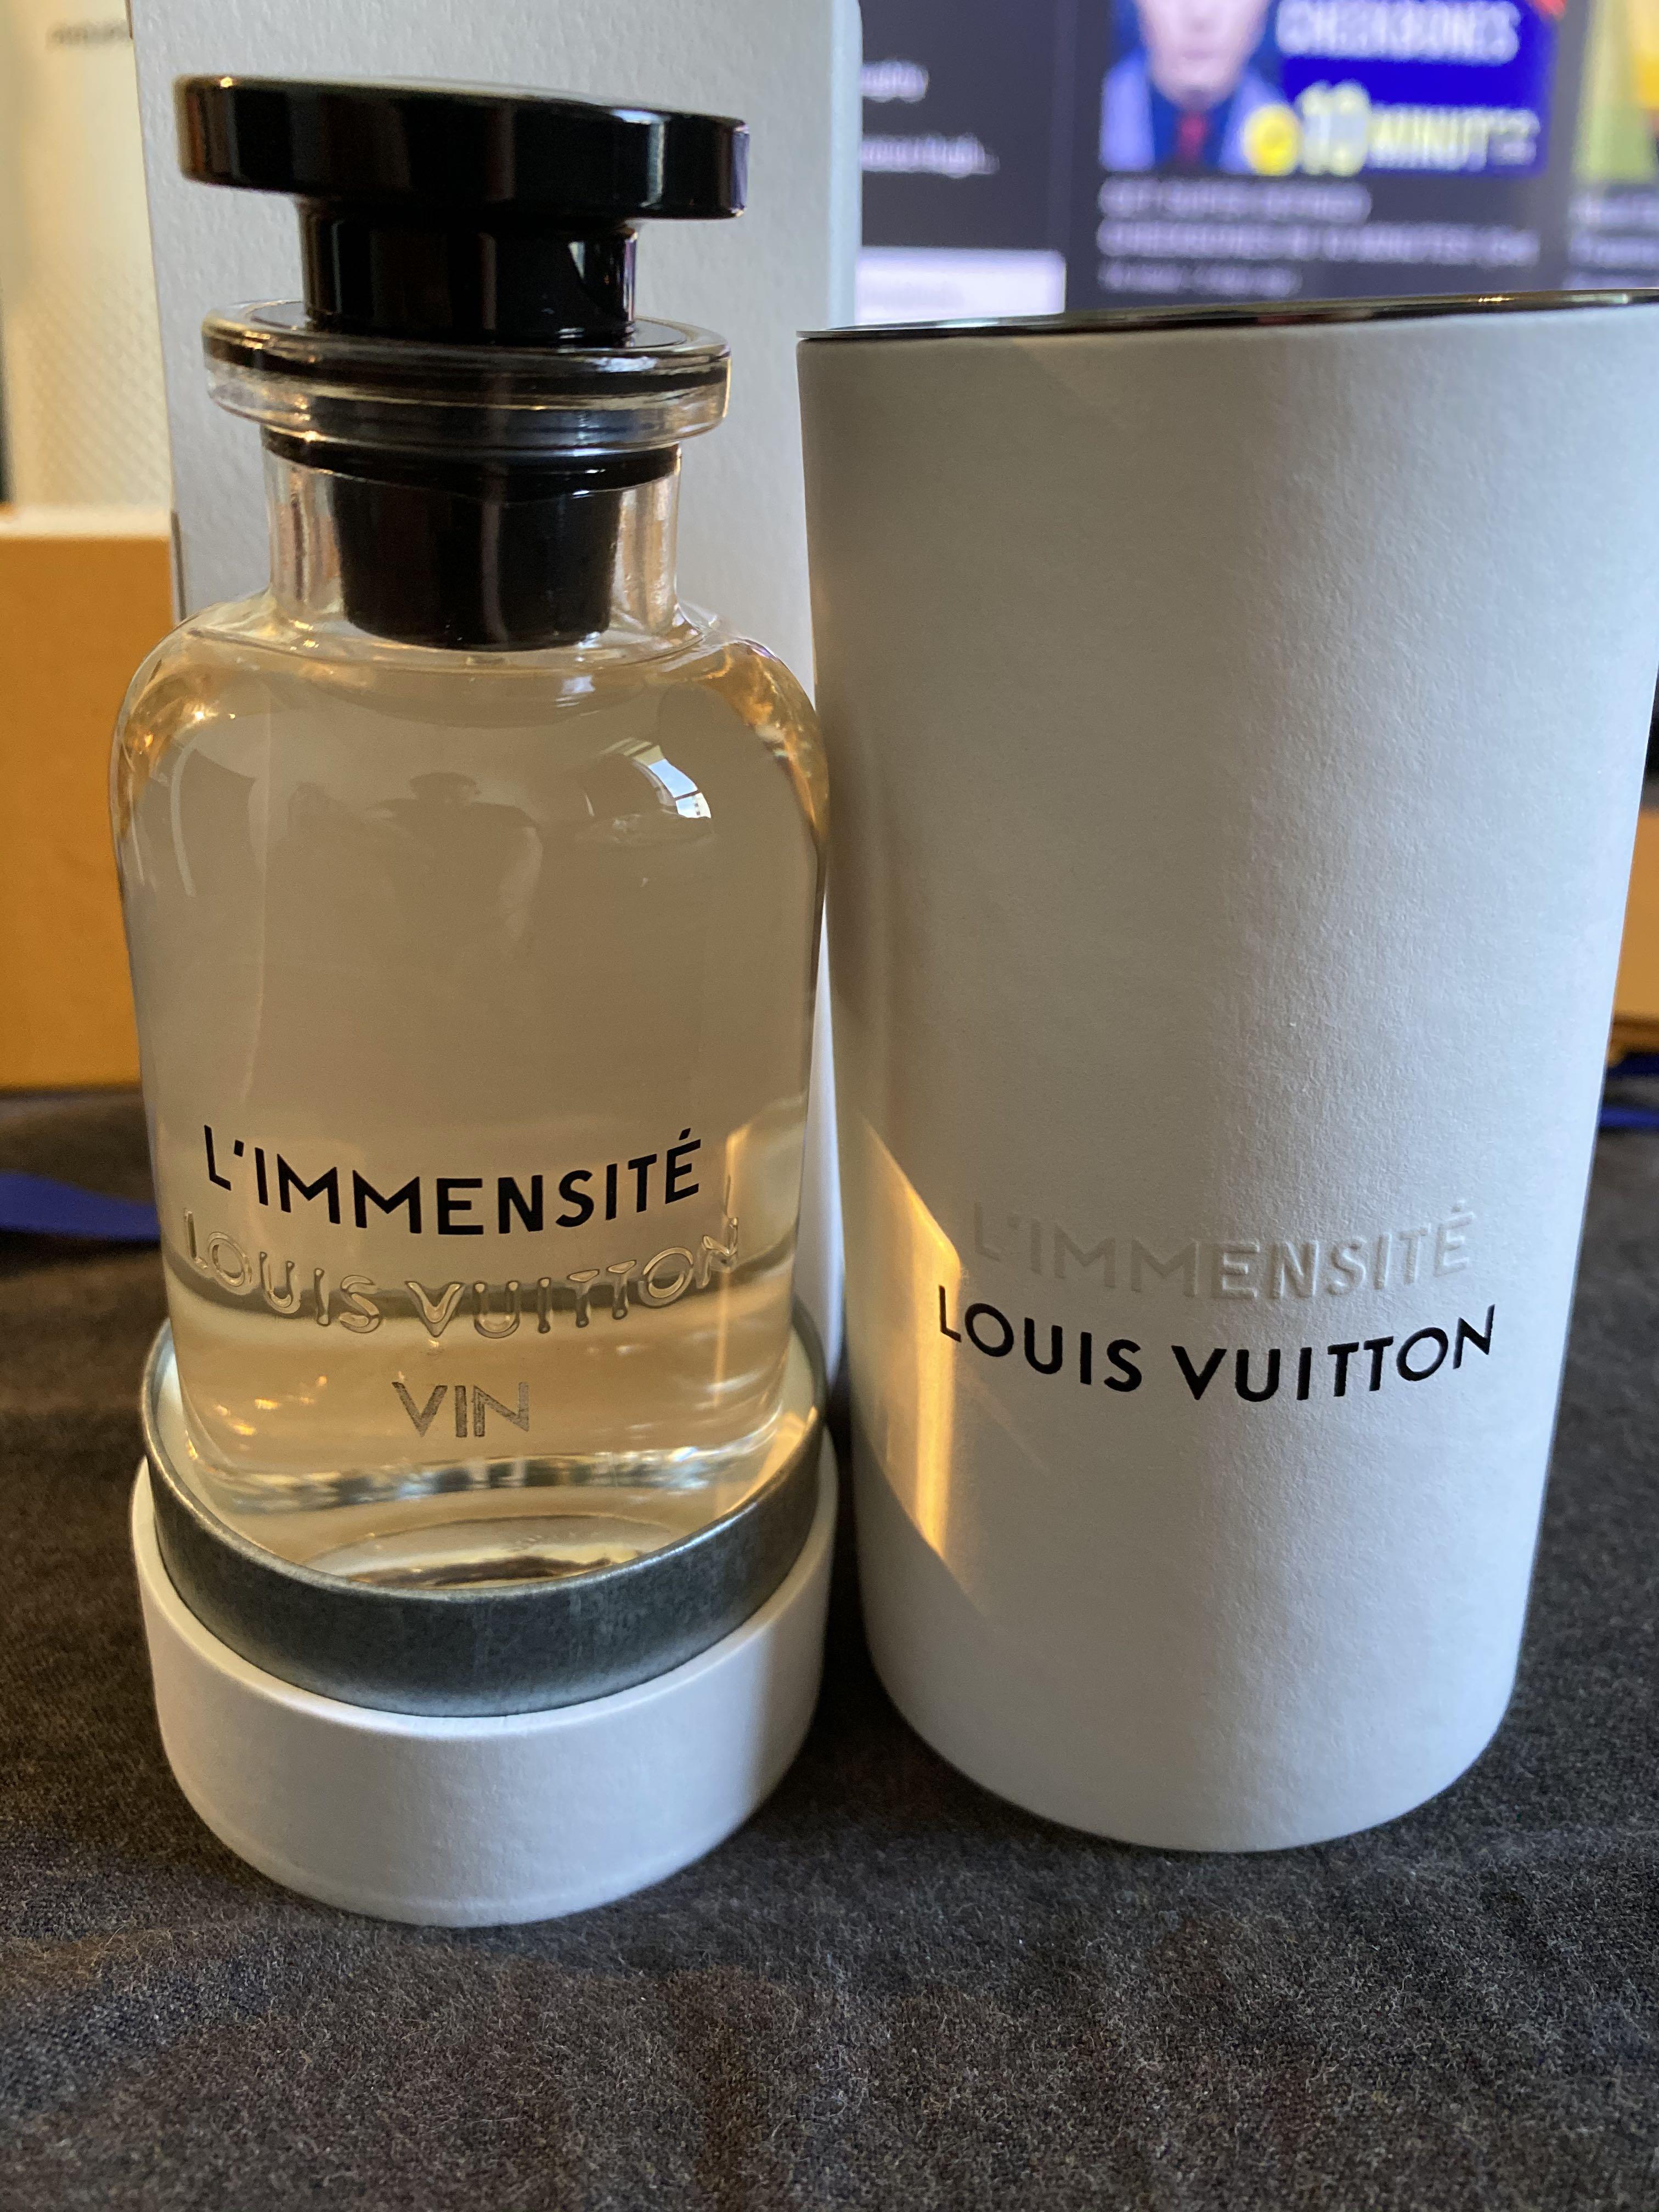 Louis Vuitton L'immensite Cologne 100ml